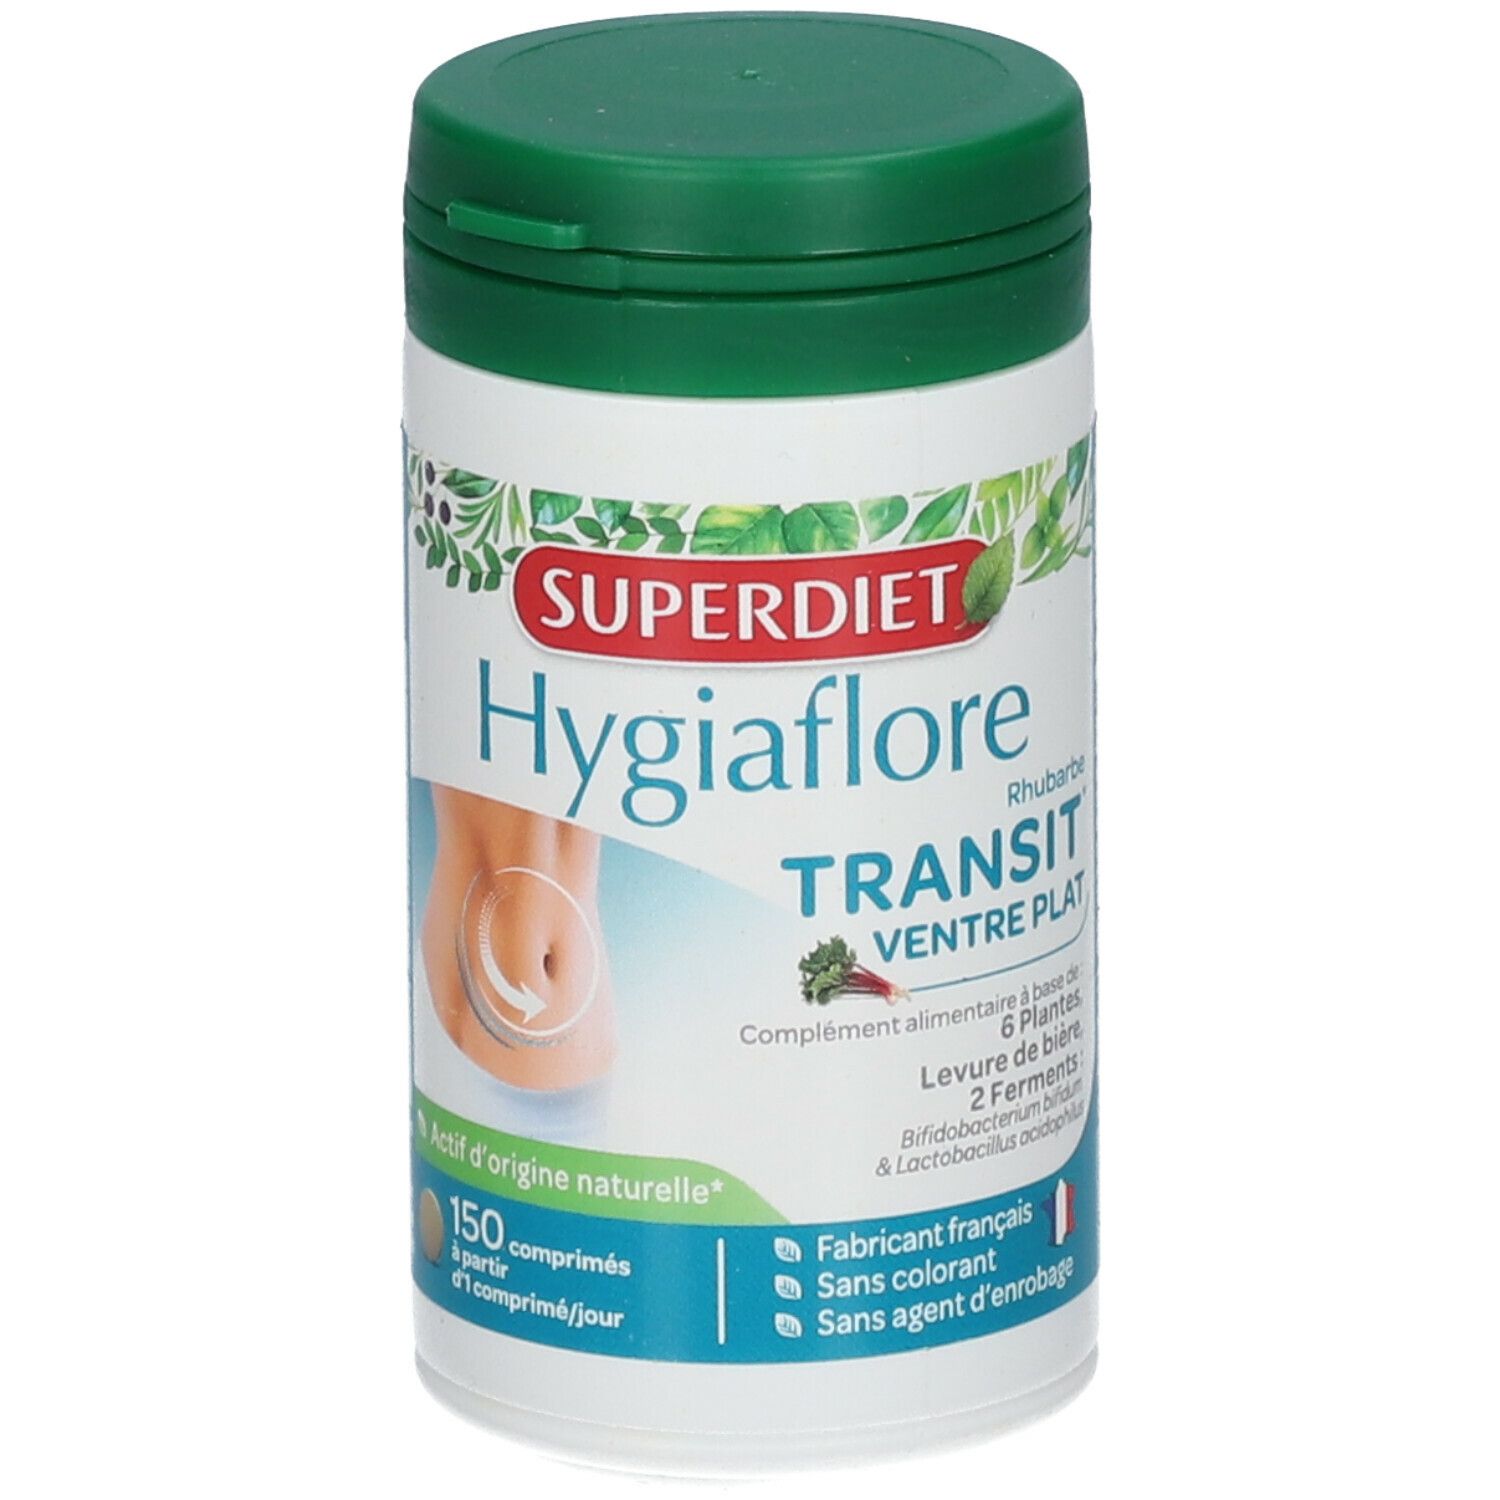 Super Diet Hygiaflore Transit